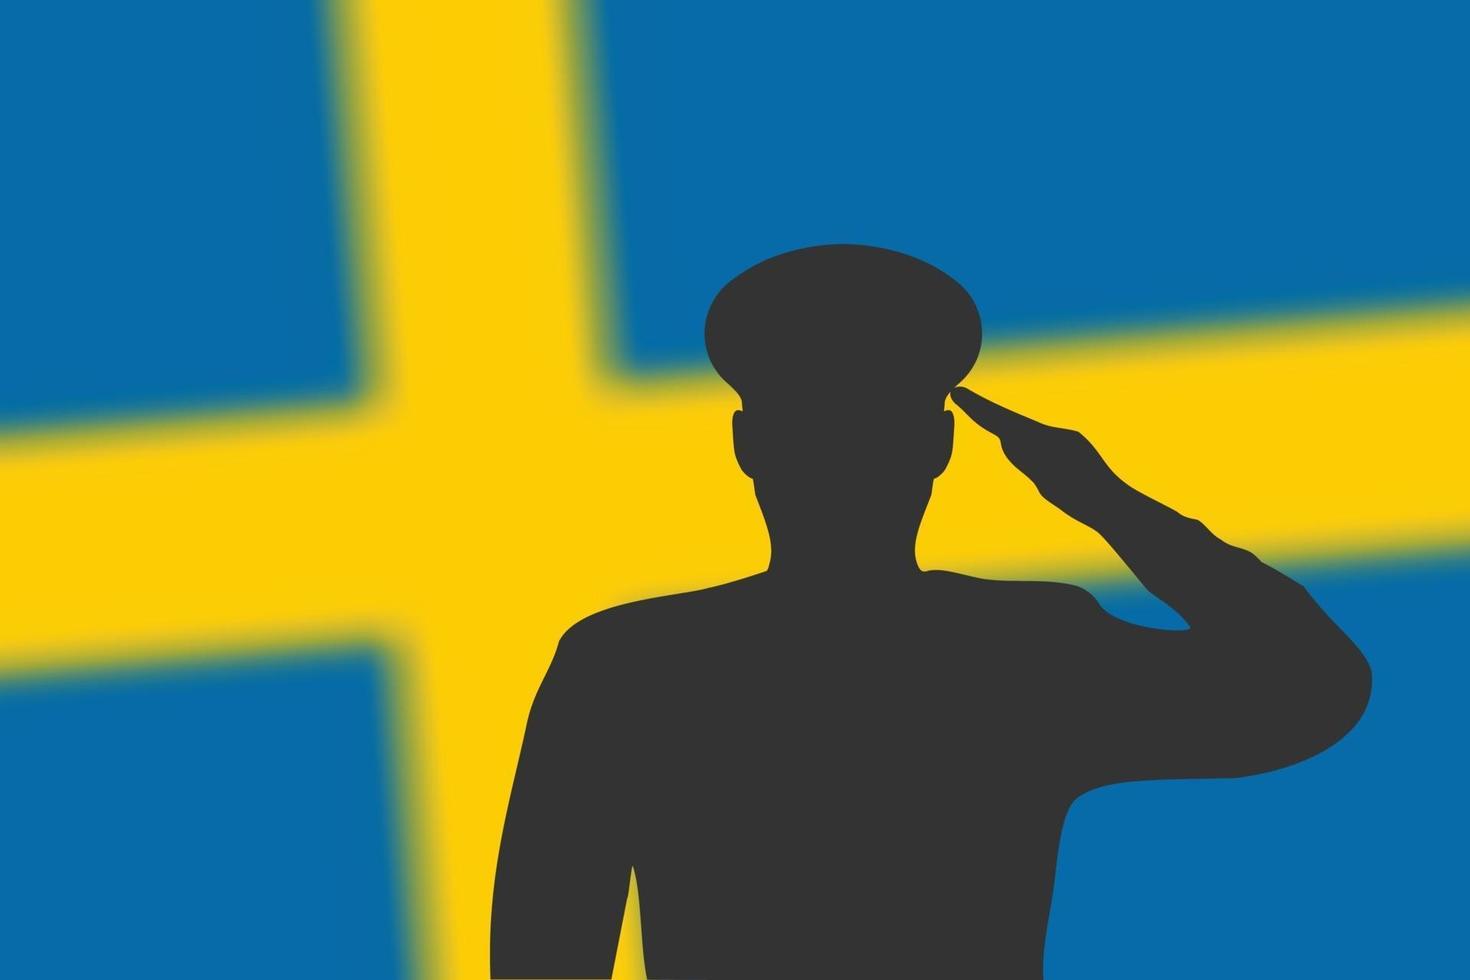 silueta de soldadura sobre fondo borroso con la bandera de suecia. vector